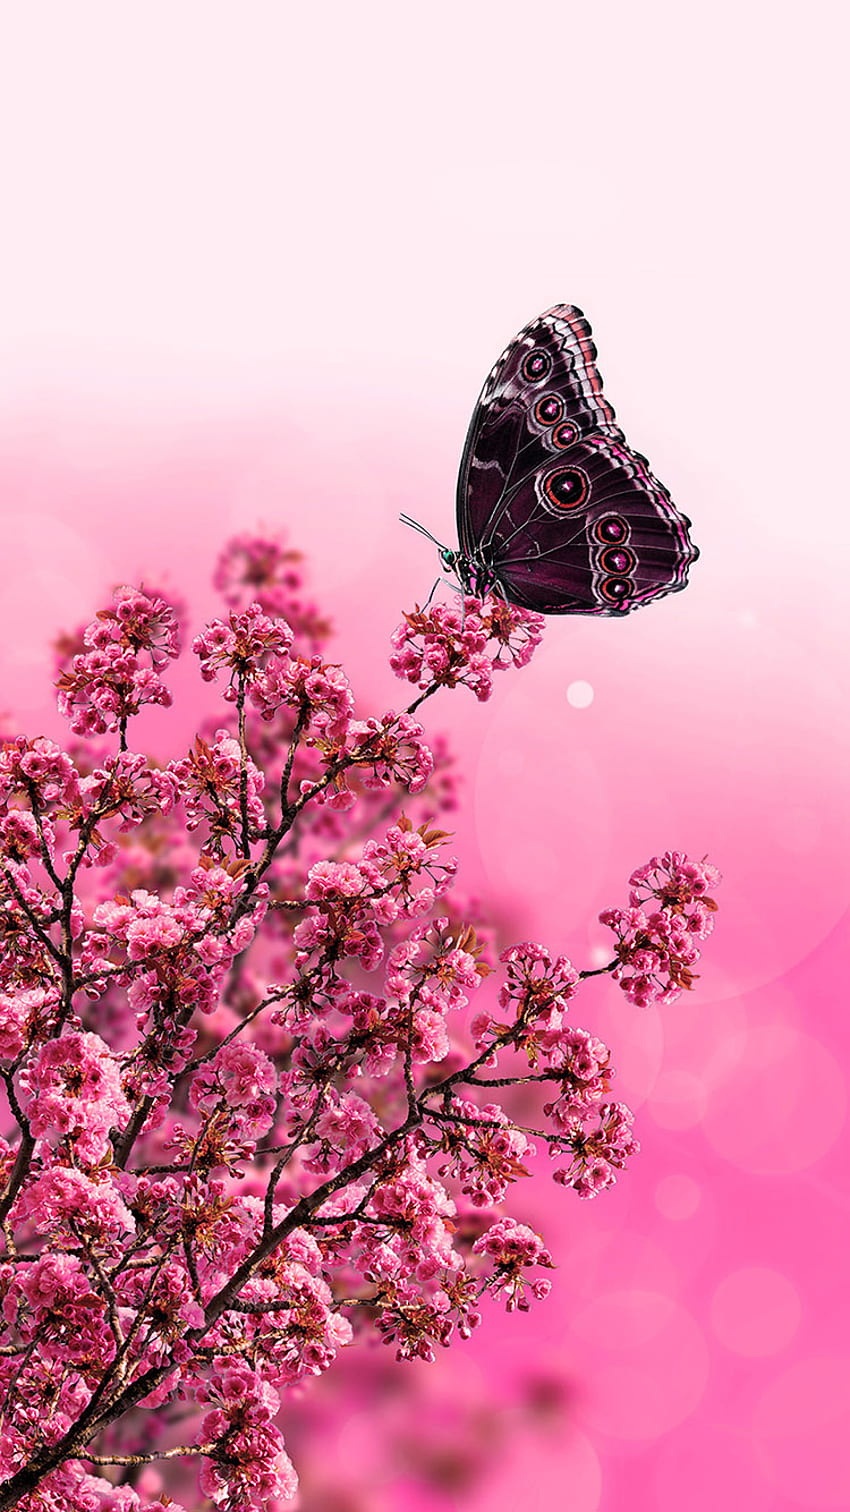 Sắm ngay cho chiếc iPhone 6 của bạn bộ sưu tập hình nền xinh đẹp với bướm búp bê và hoa hồng hồng tươi tắn nhất. Các bức ảnh được thiết kế với phong cách ngọt ngào và đáng yêu phù hợp với sở thích của các cô gái. 